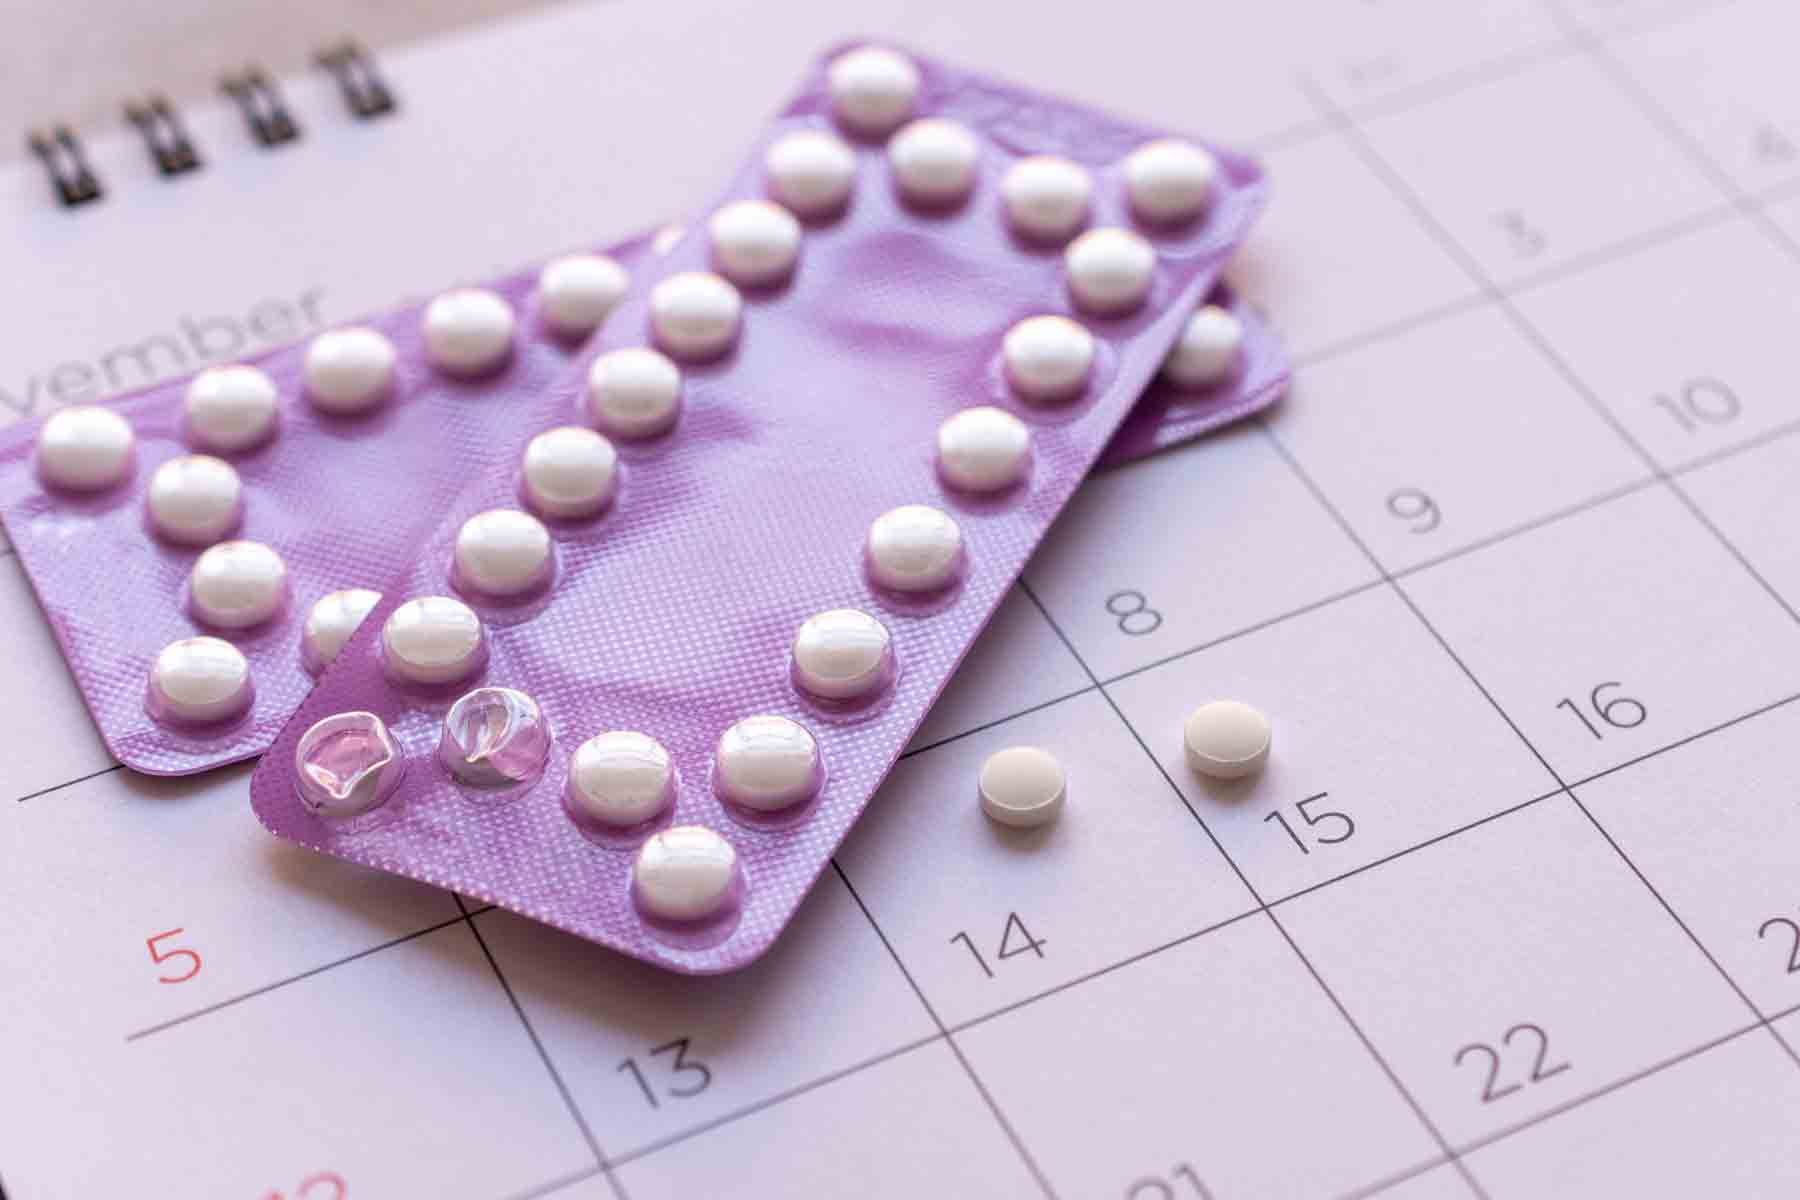 Contraceptions d'urgence et pilule du lendemain